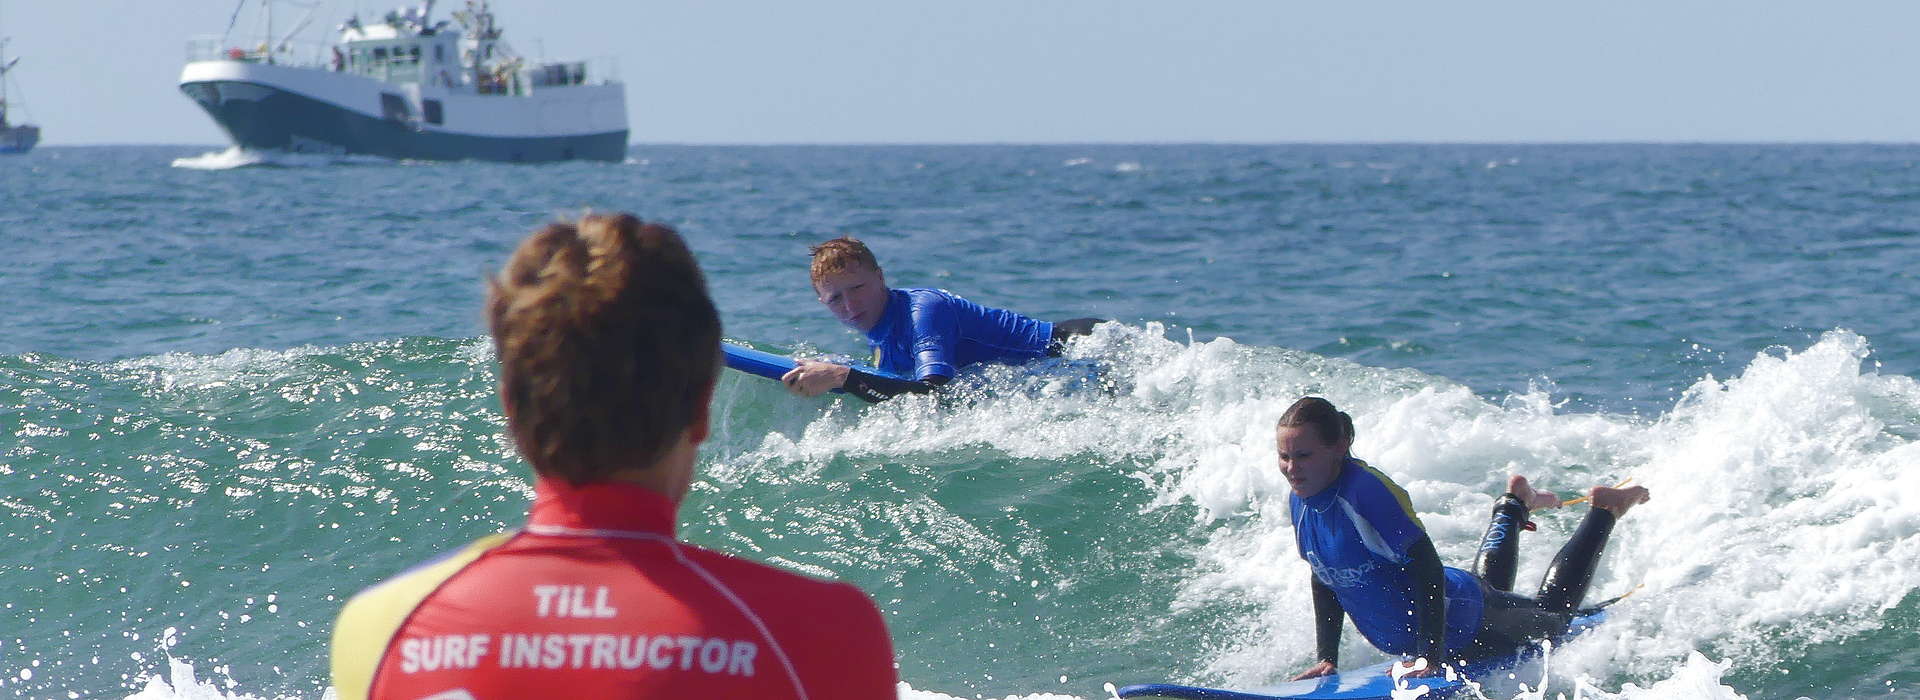 Surf Kurs Praxis in Spanien